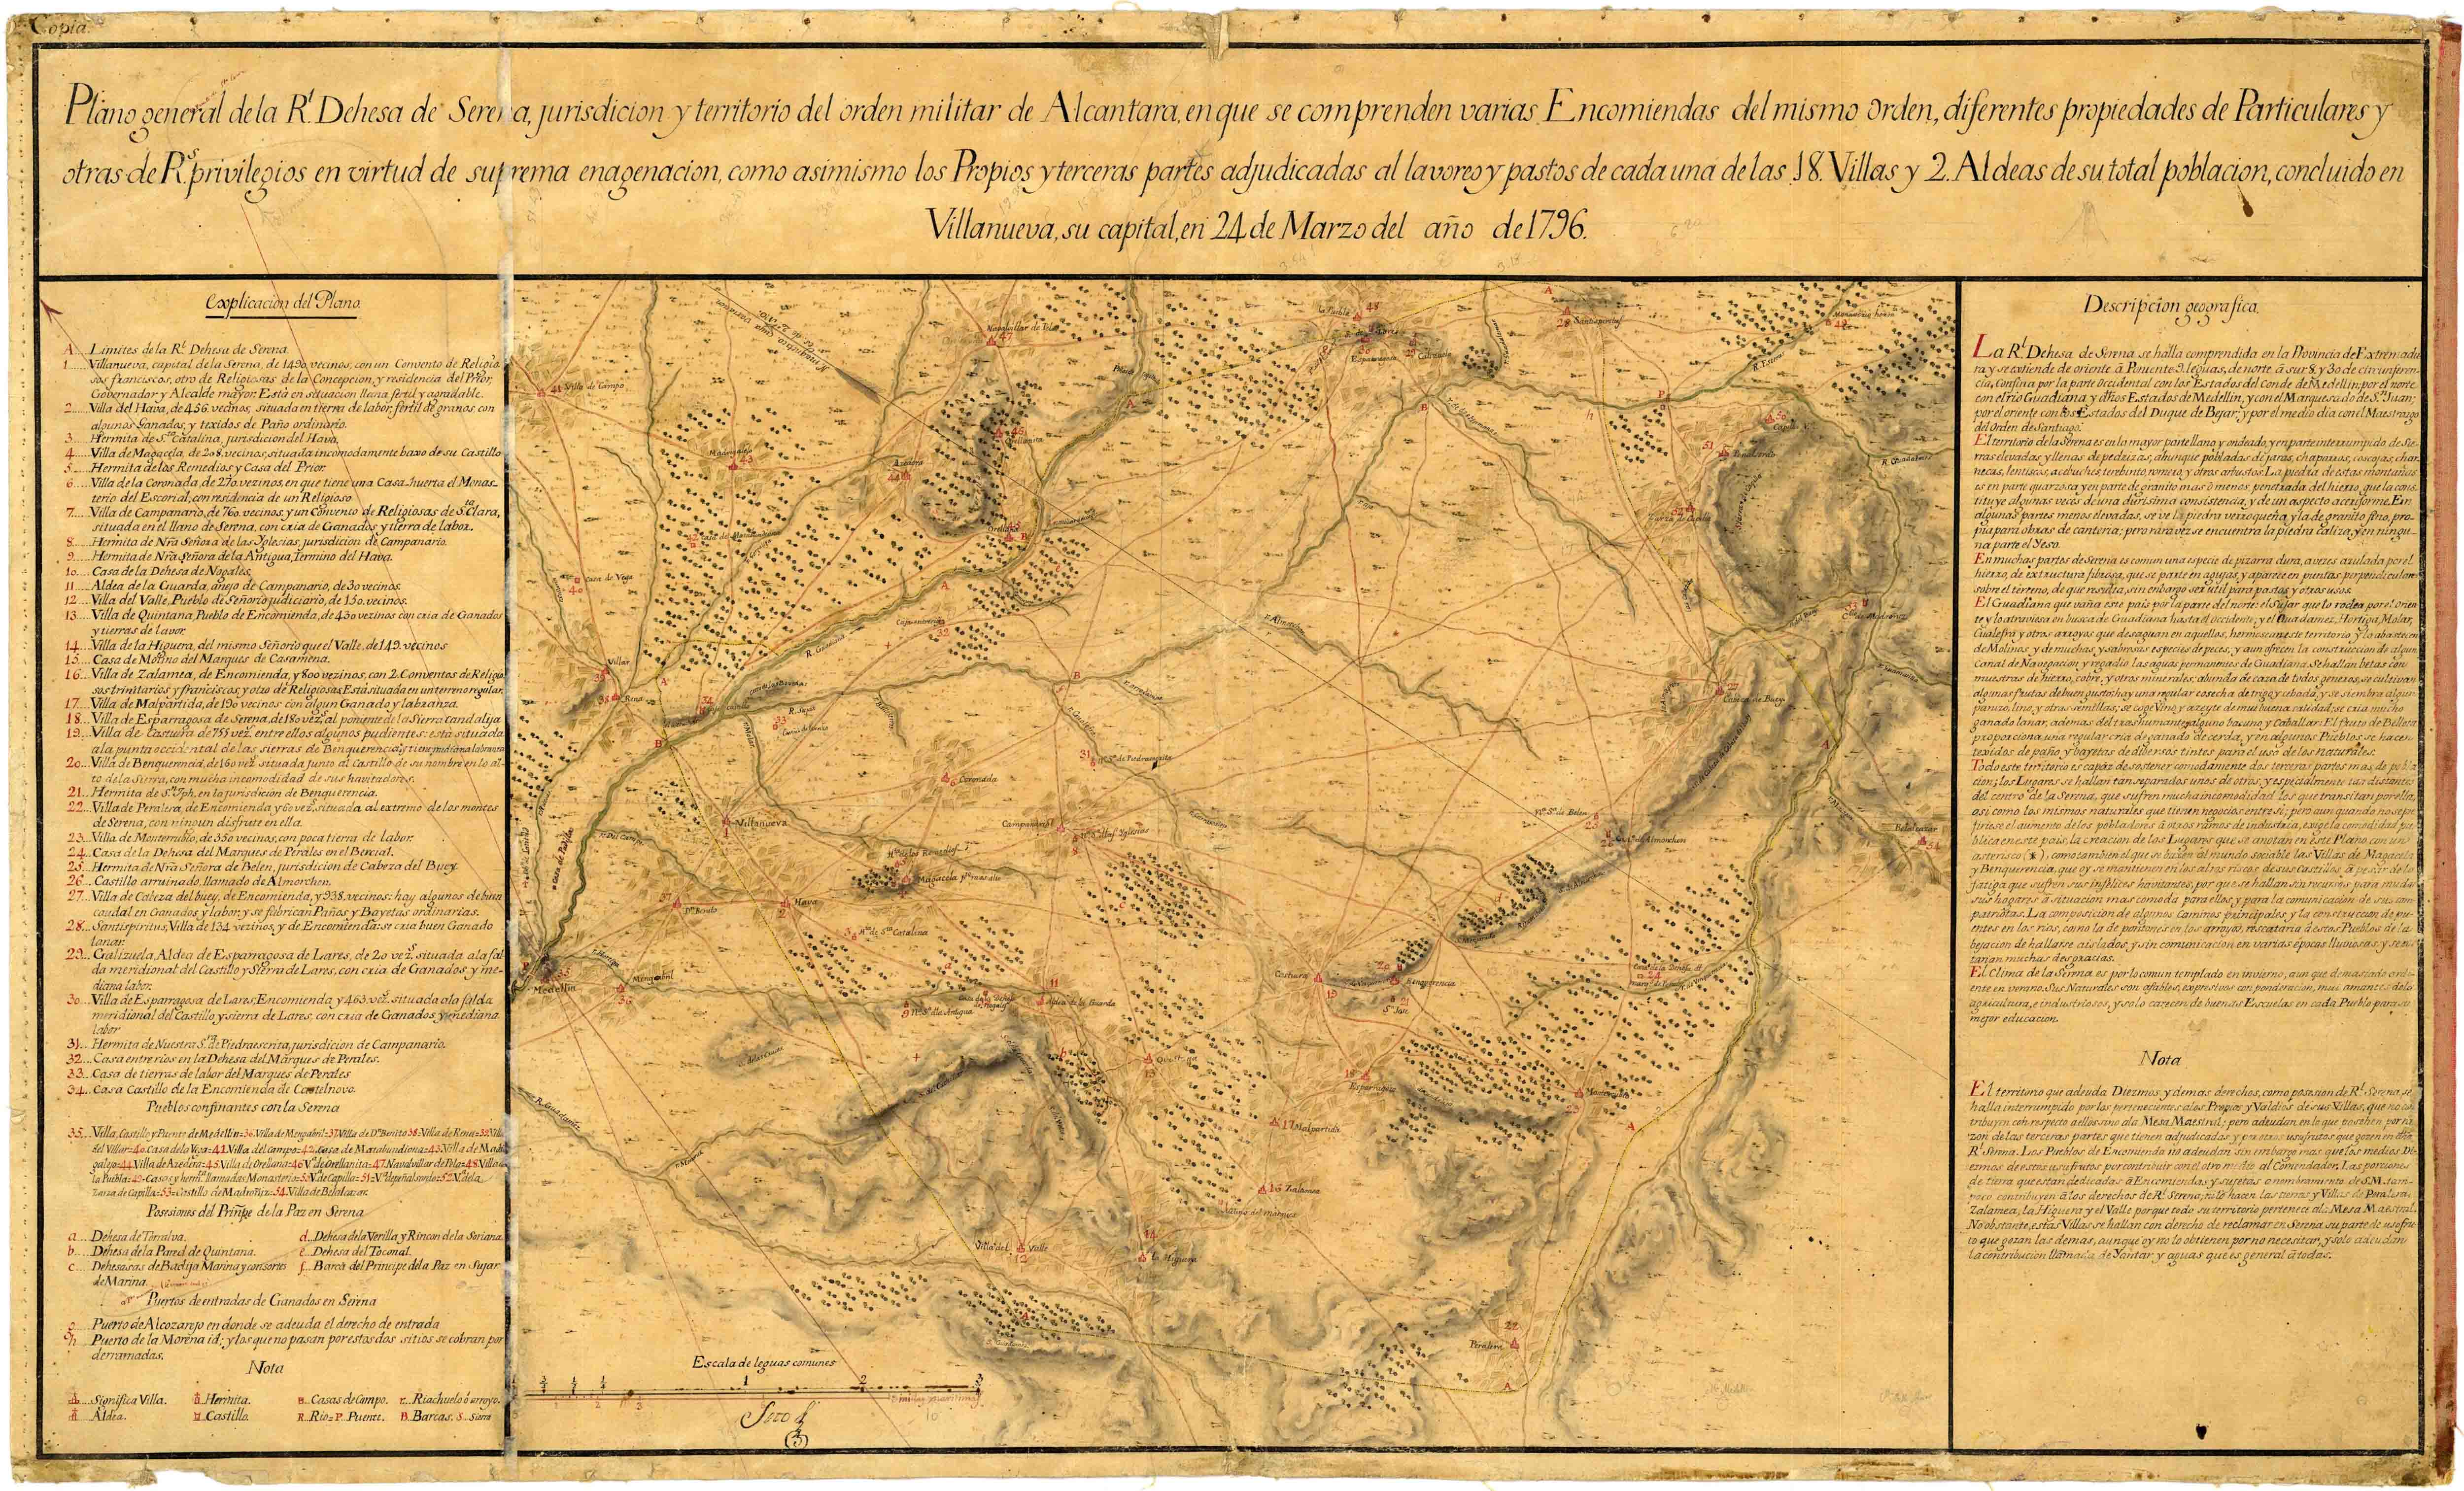 Plano general de la Rl. Dehesa de Serena, jurisdición y territorio del orden militar de Alcantara